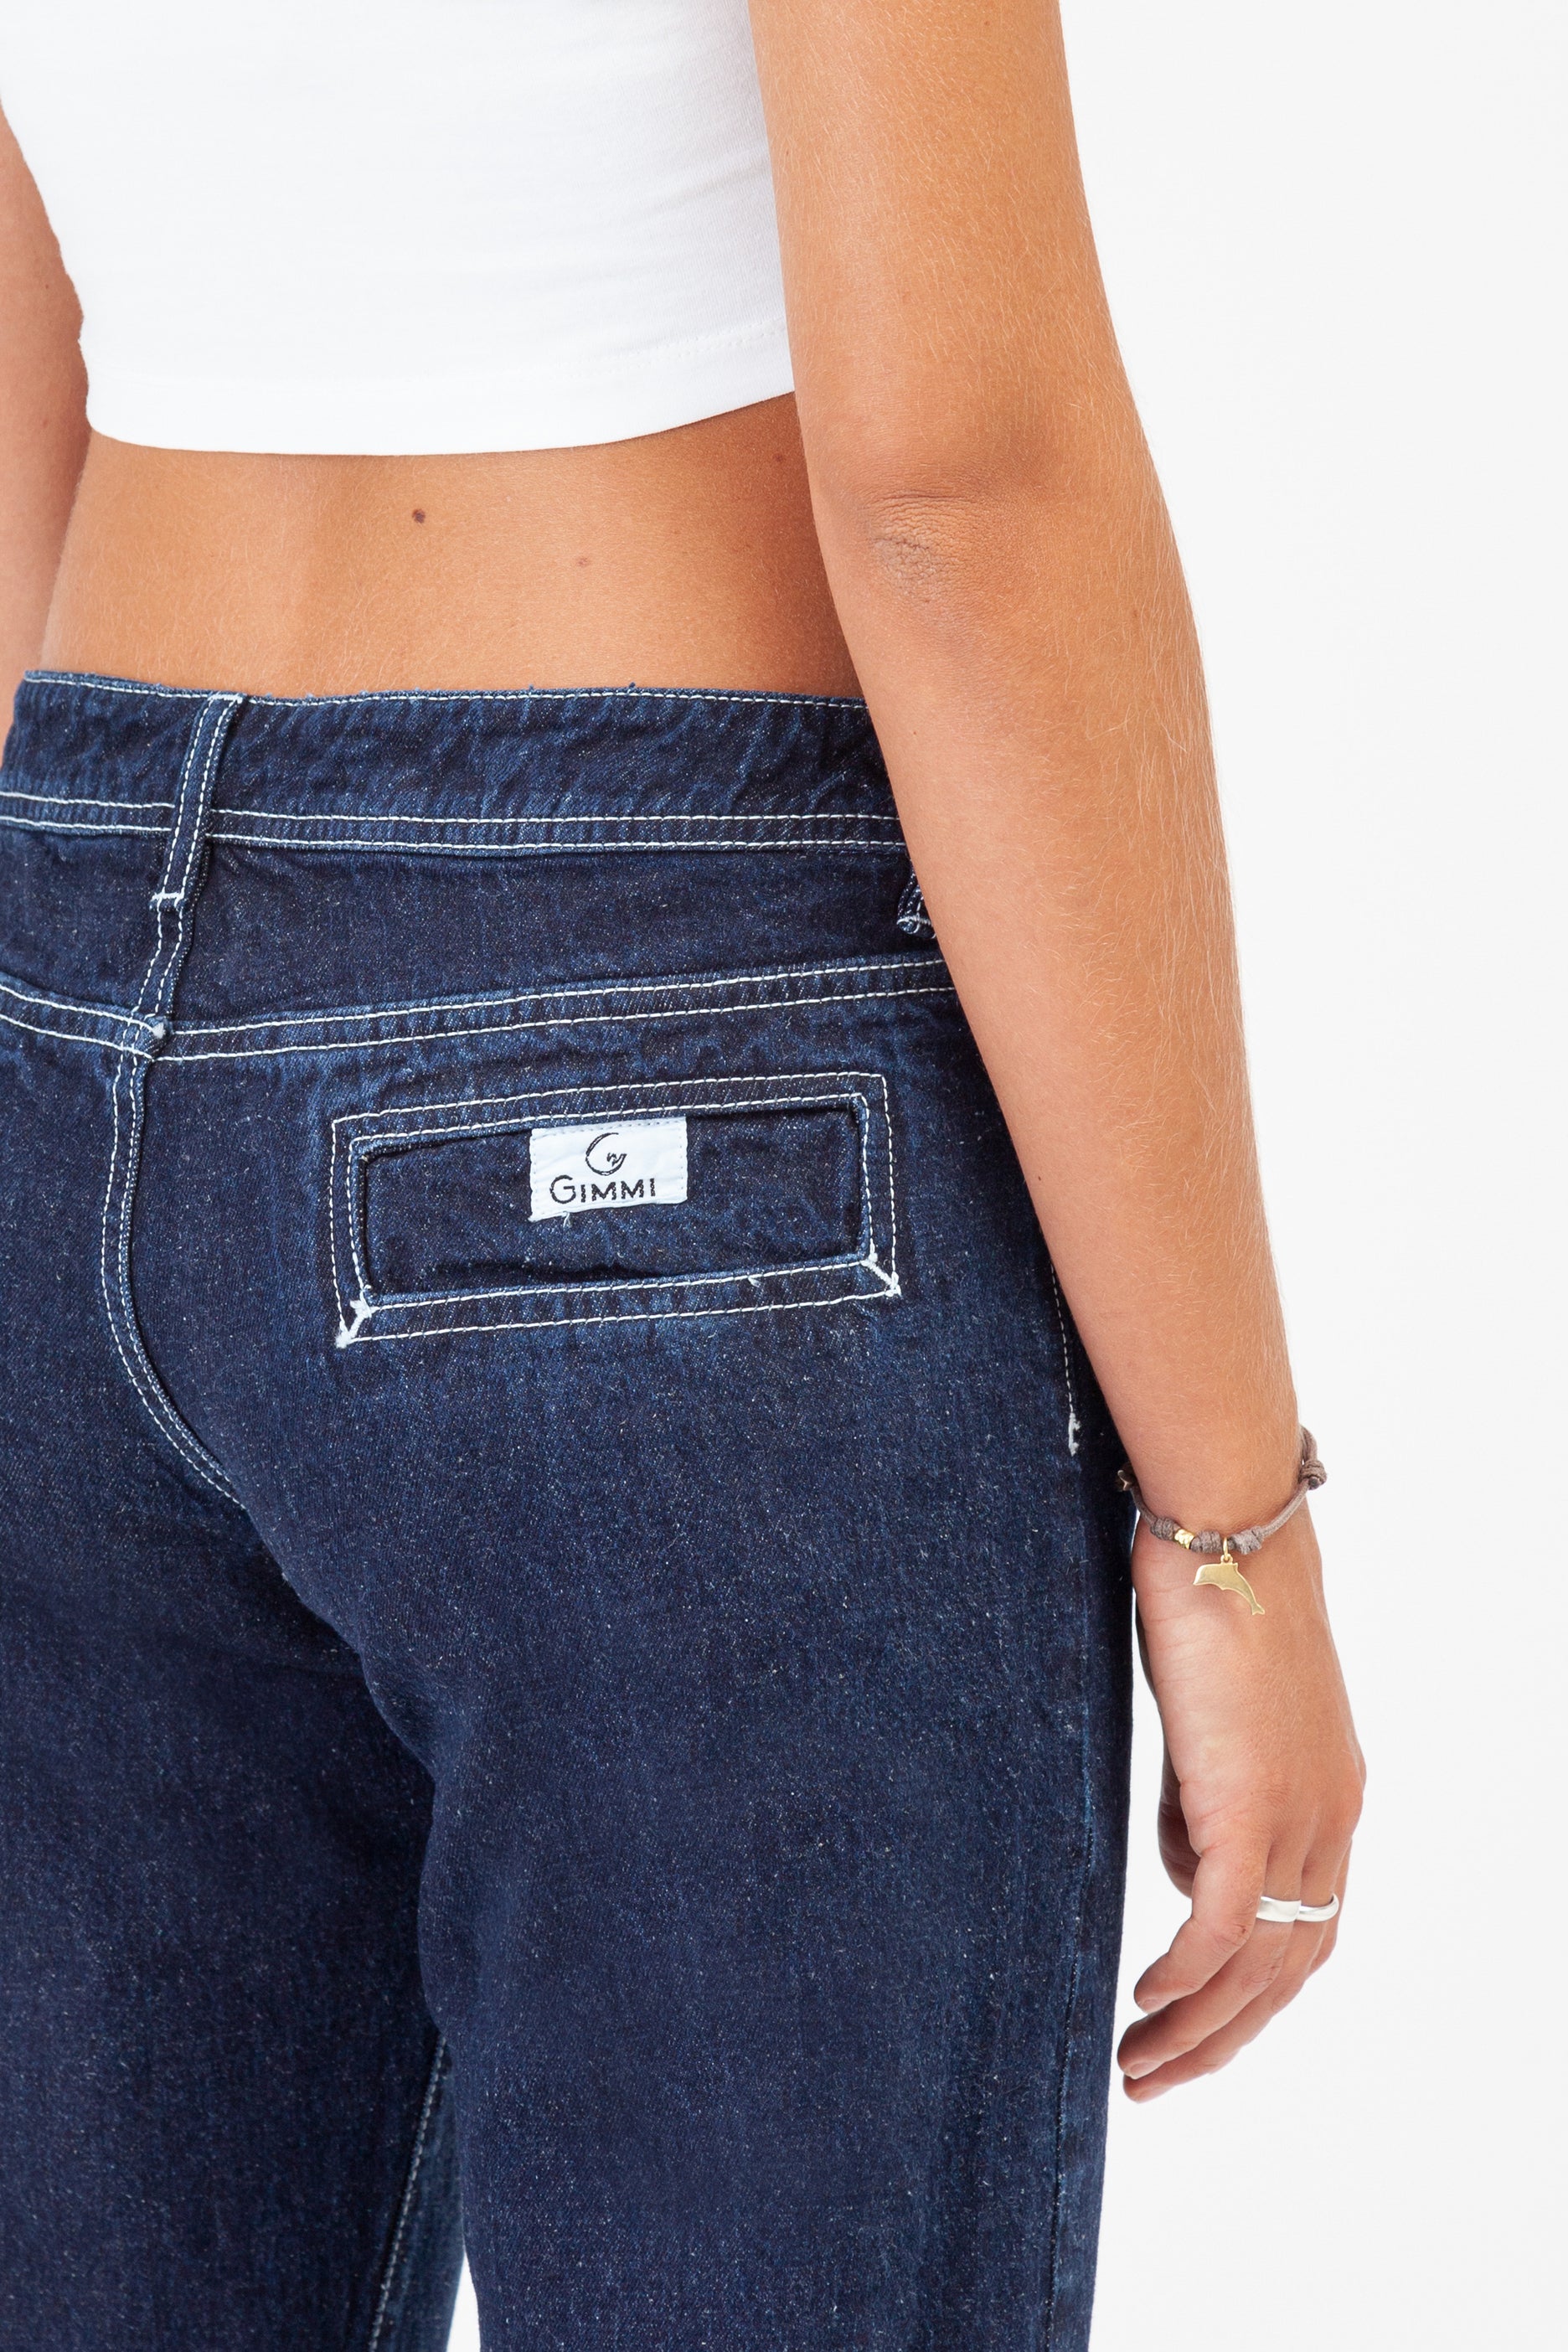 jeans-futura-denim-canapa-dettaglio